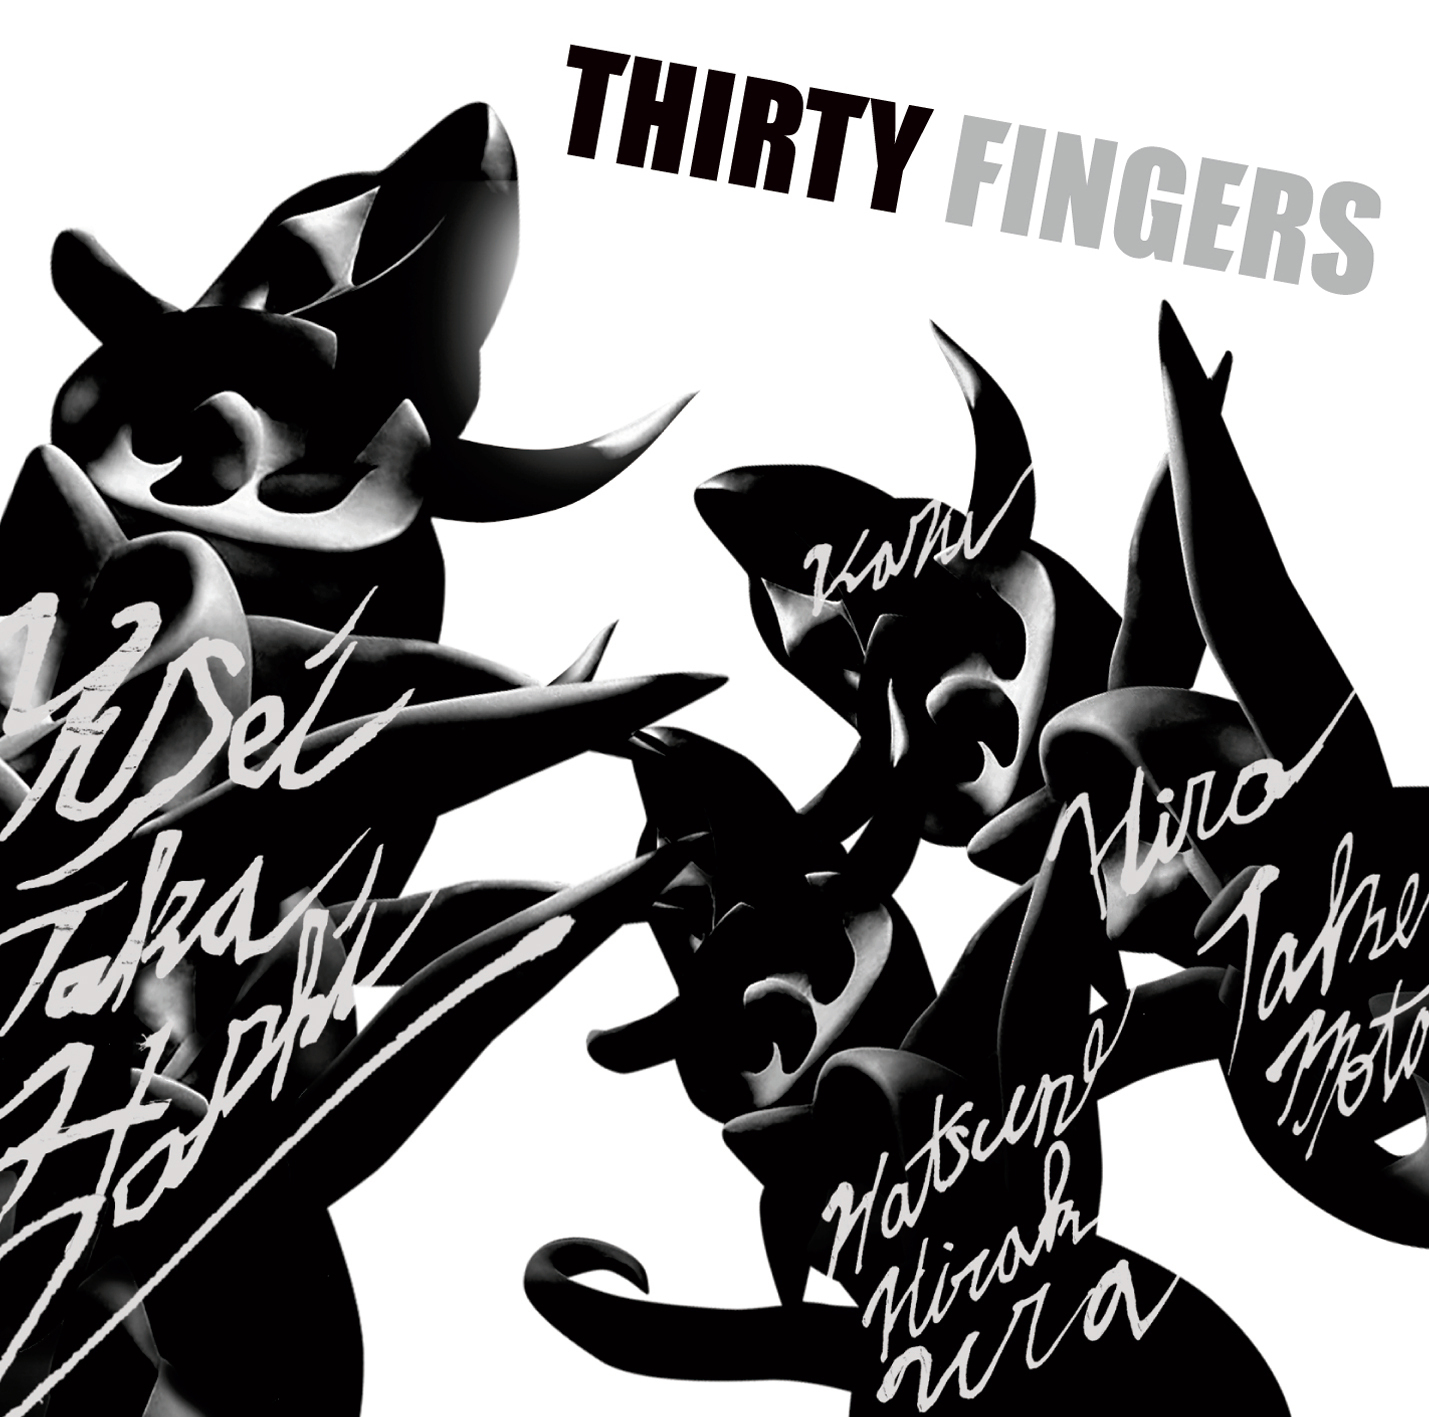 20代の俊英ジャズピアニスト3人が奏でるツインピアノの世界　
3組のデュオを収録した『Thirty Fingers』を8月21日に発売